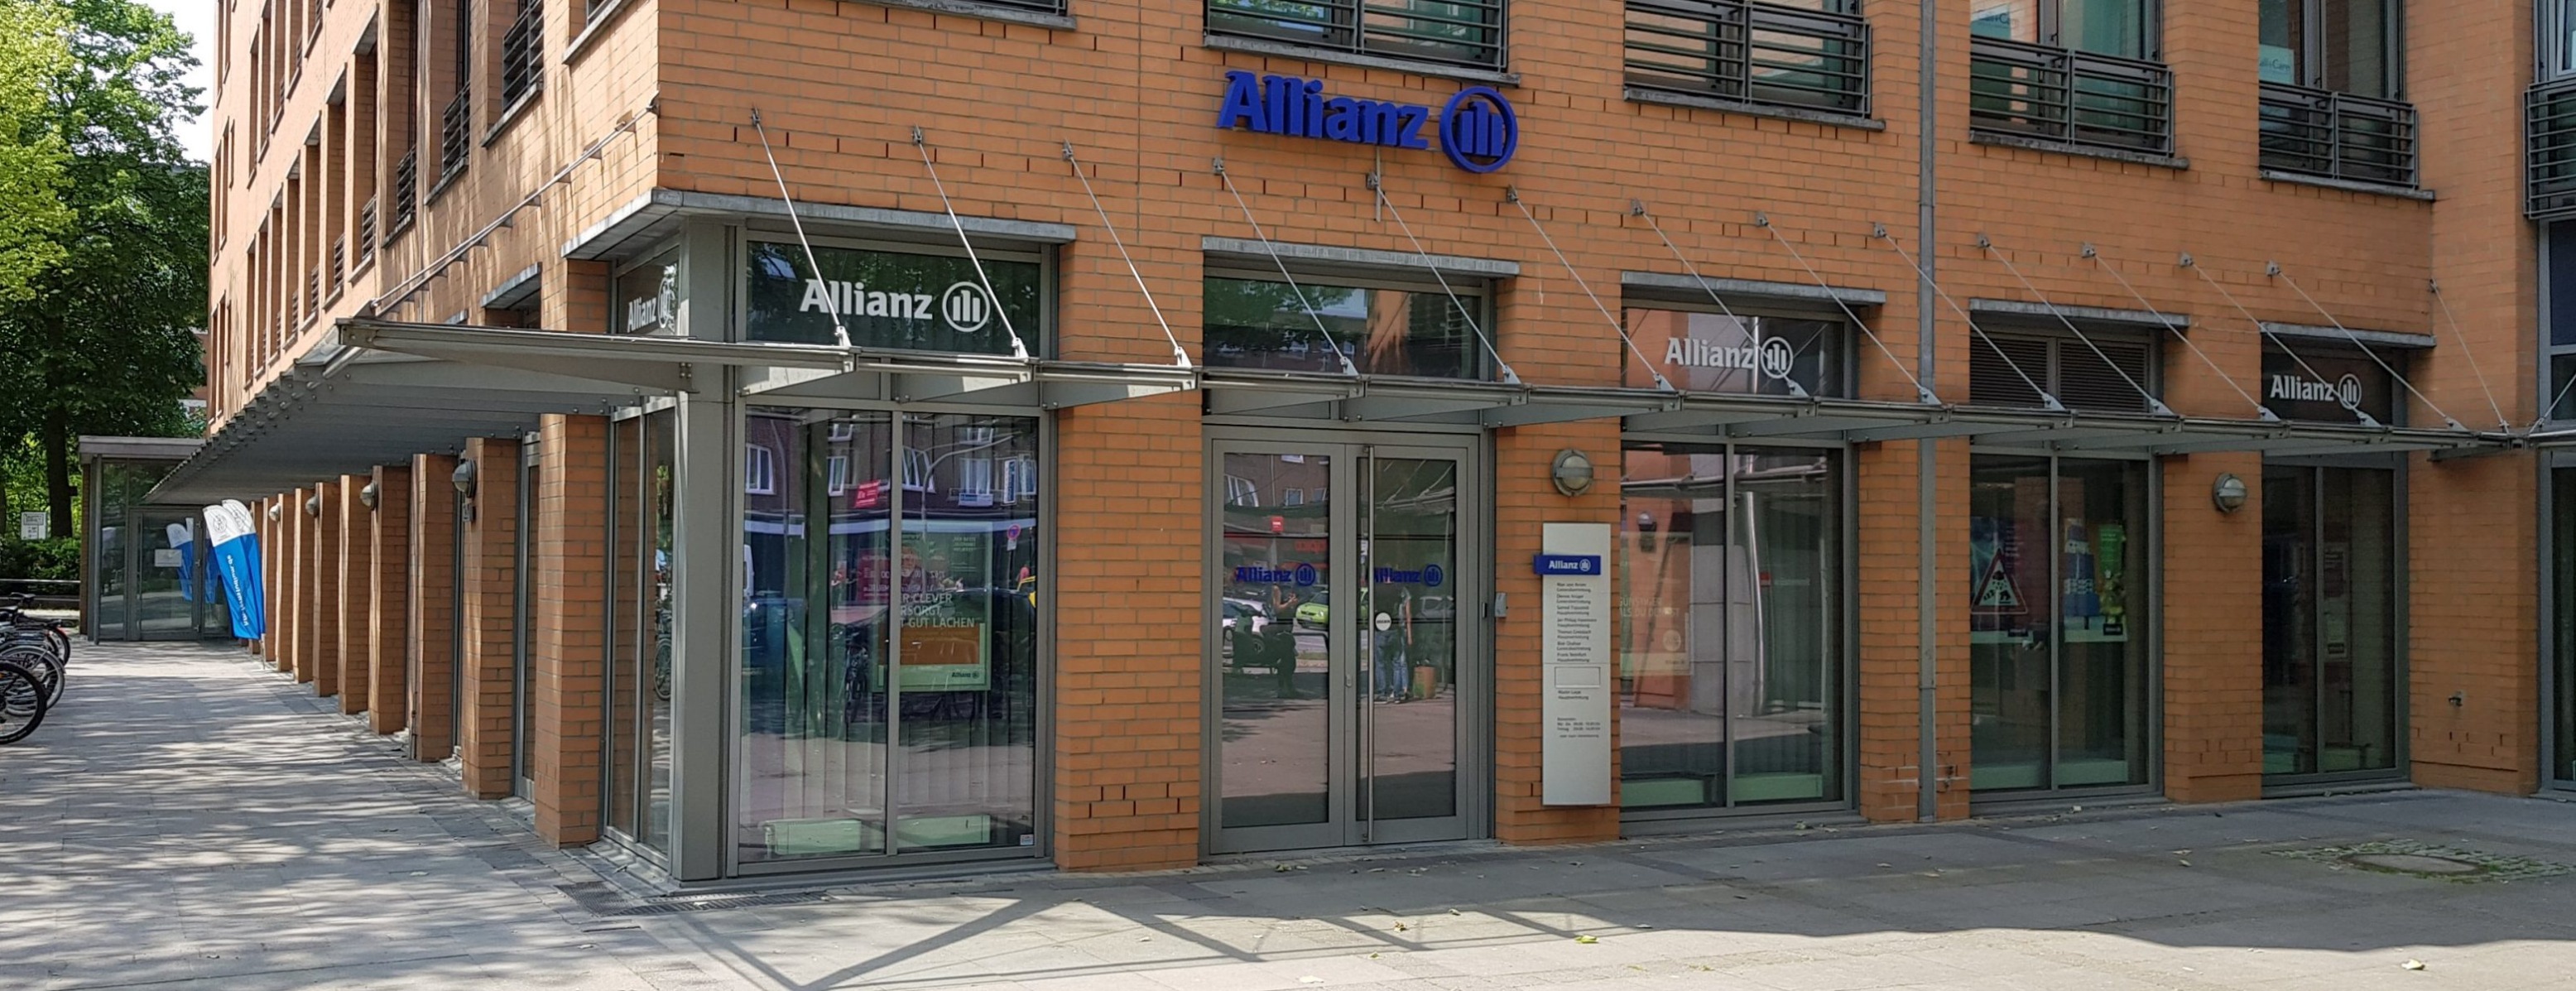 Allianz Versicherung Amir Amyri Hamburg - Hamburg Barmbek Hamburger Straße 181 22083 Allianz